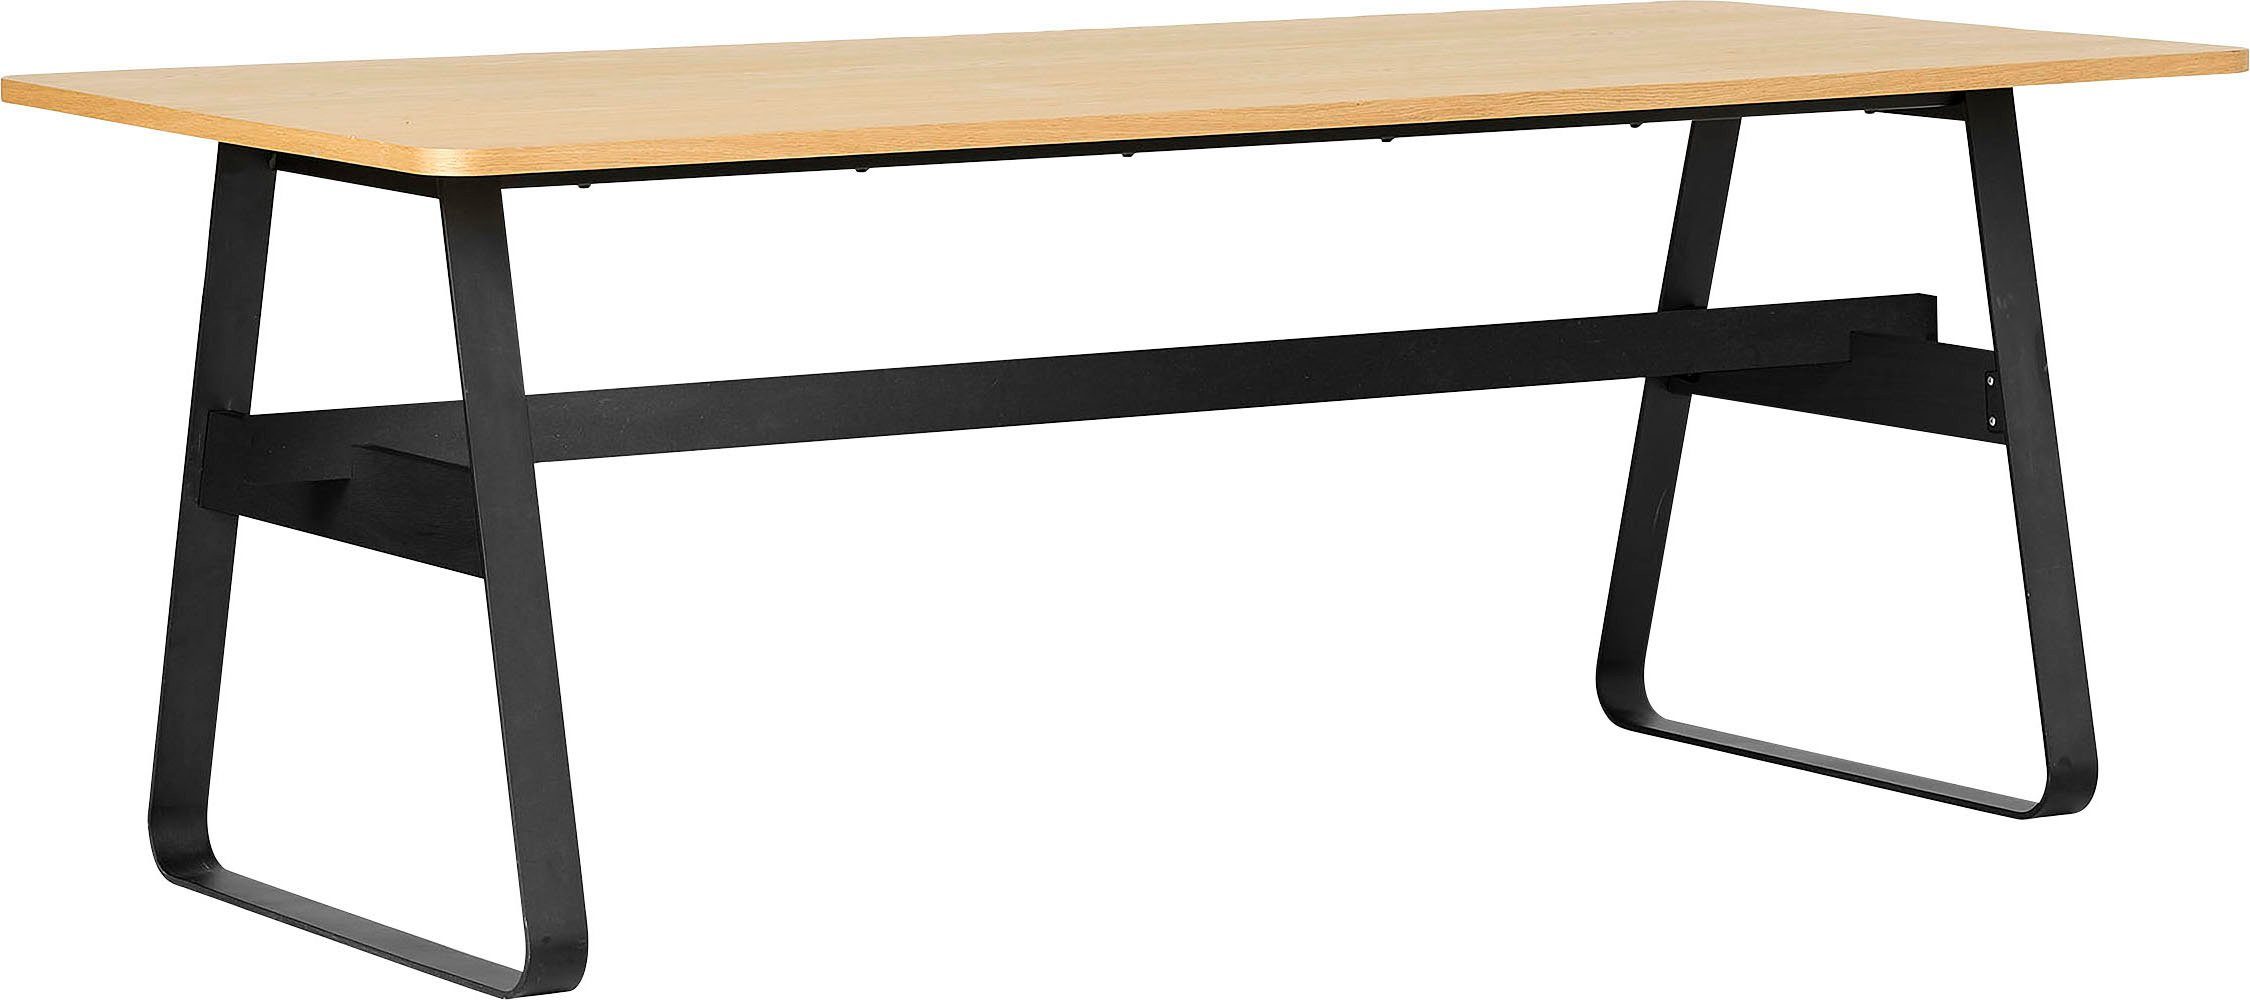 andas Esstisch »Rörvik«, mit einem edlen robusten schwarzen Metallgestell und einer schönen Holzoptik Tischplatte in naturfarben, Breite 200 cm-Otto